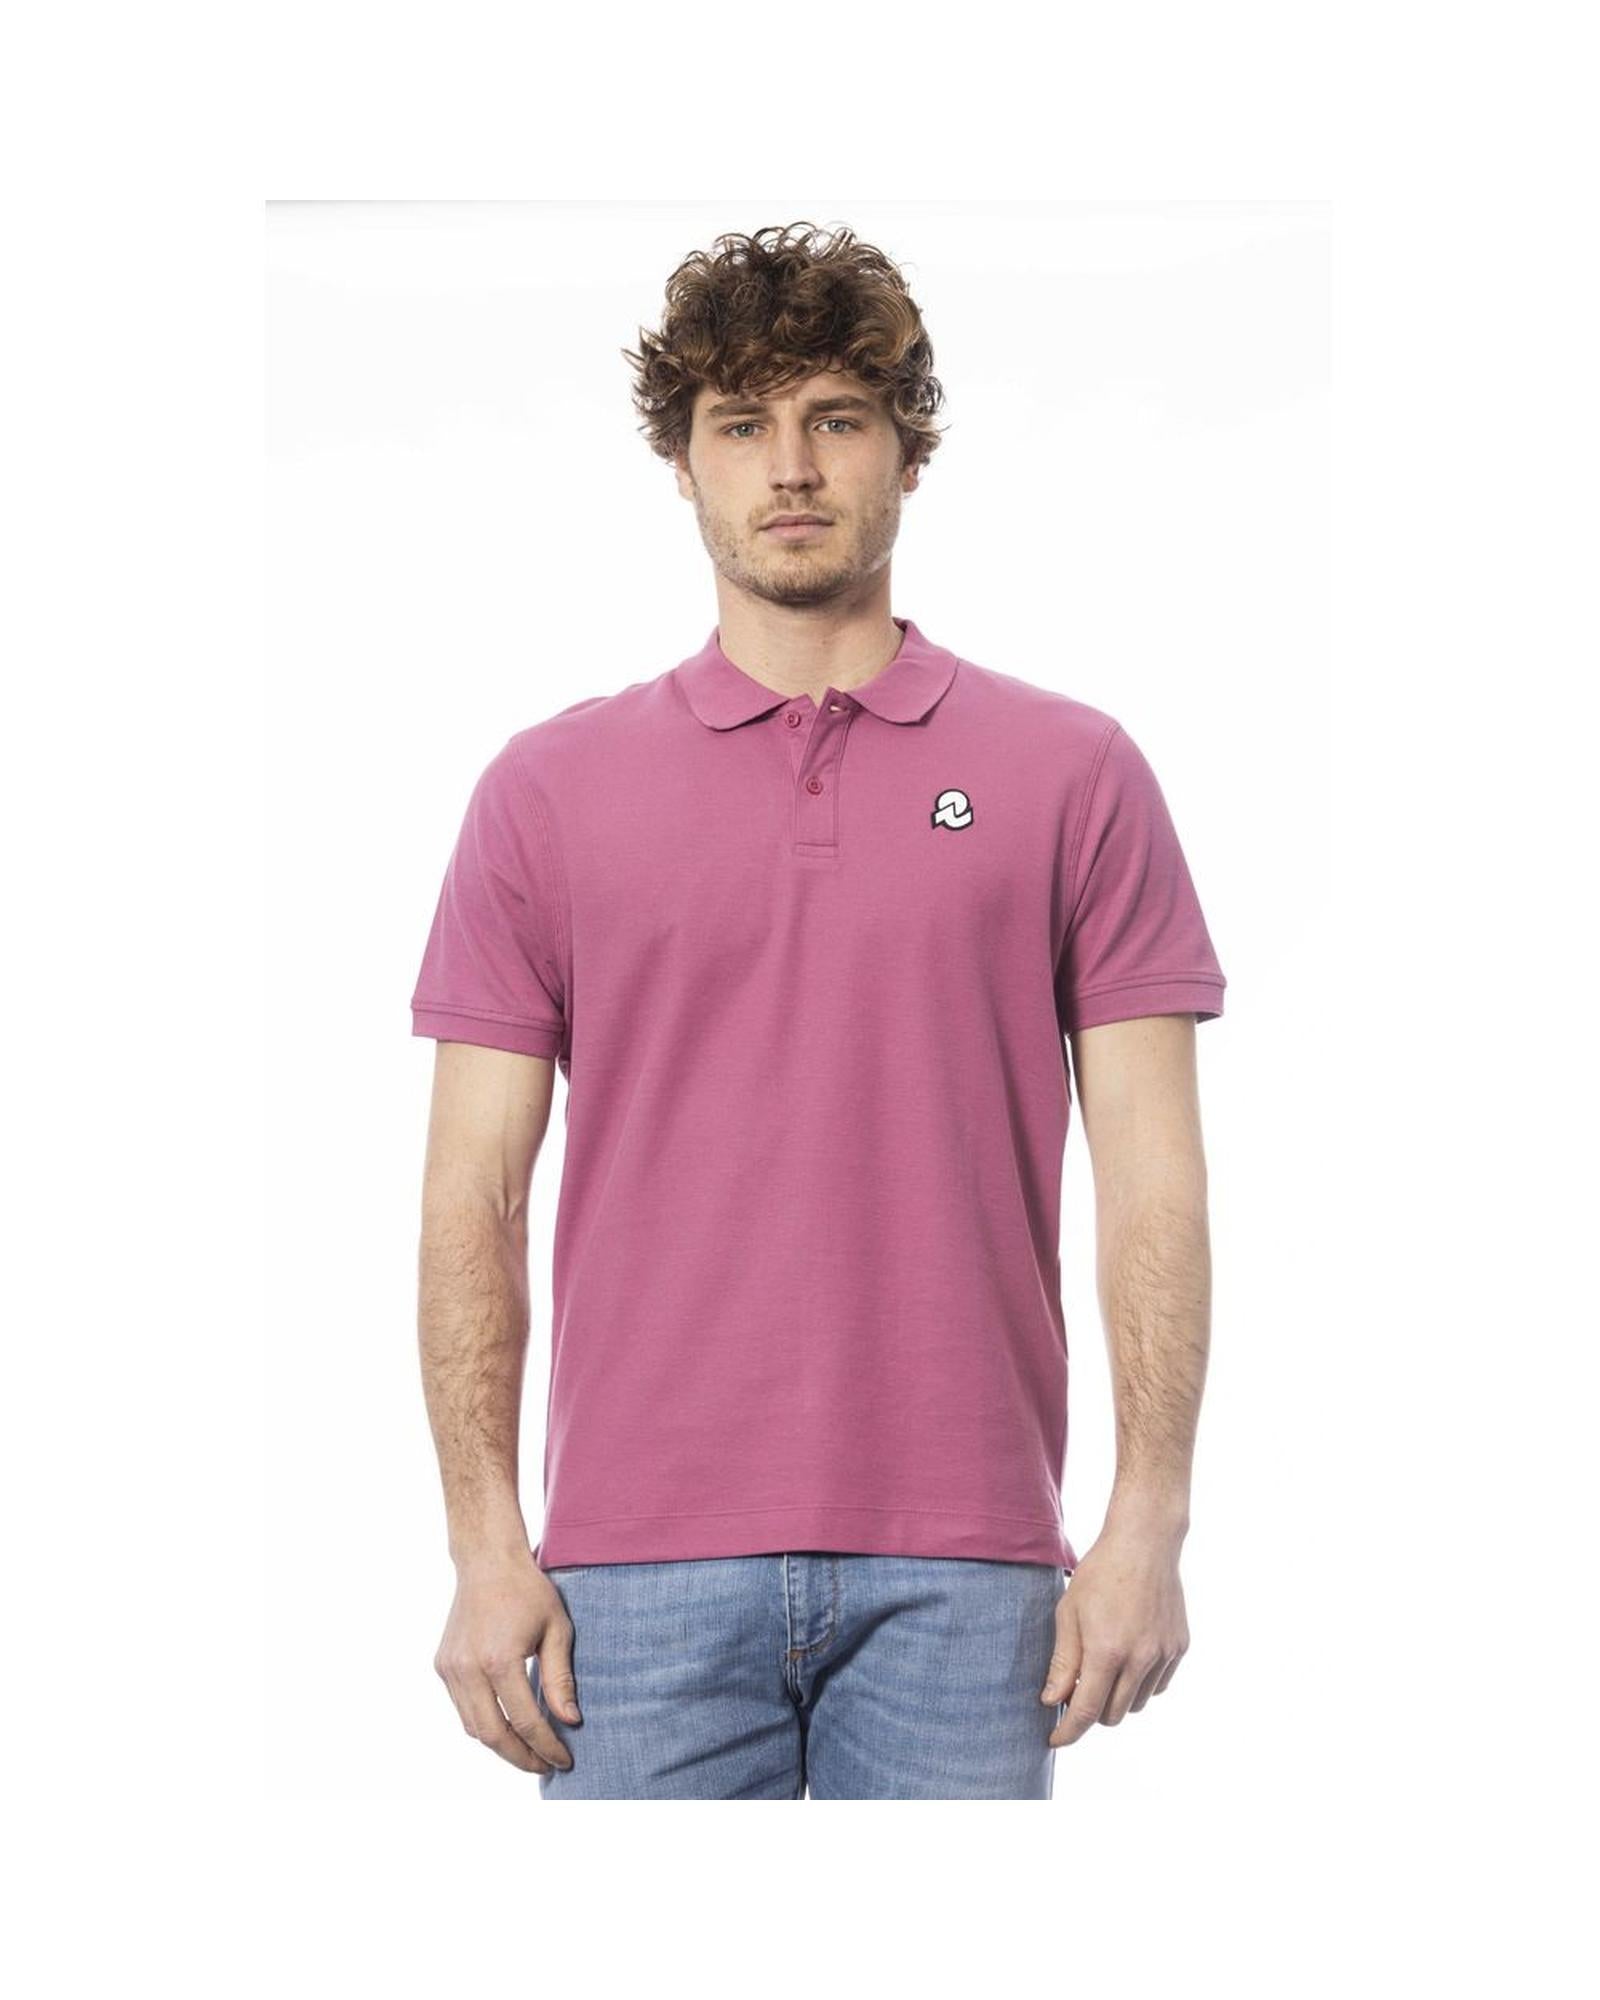 Men's Purple Cotton Polo Shirt - S